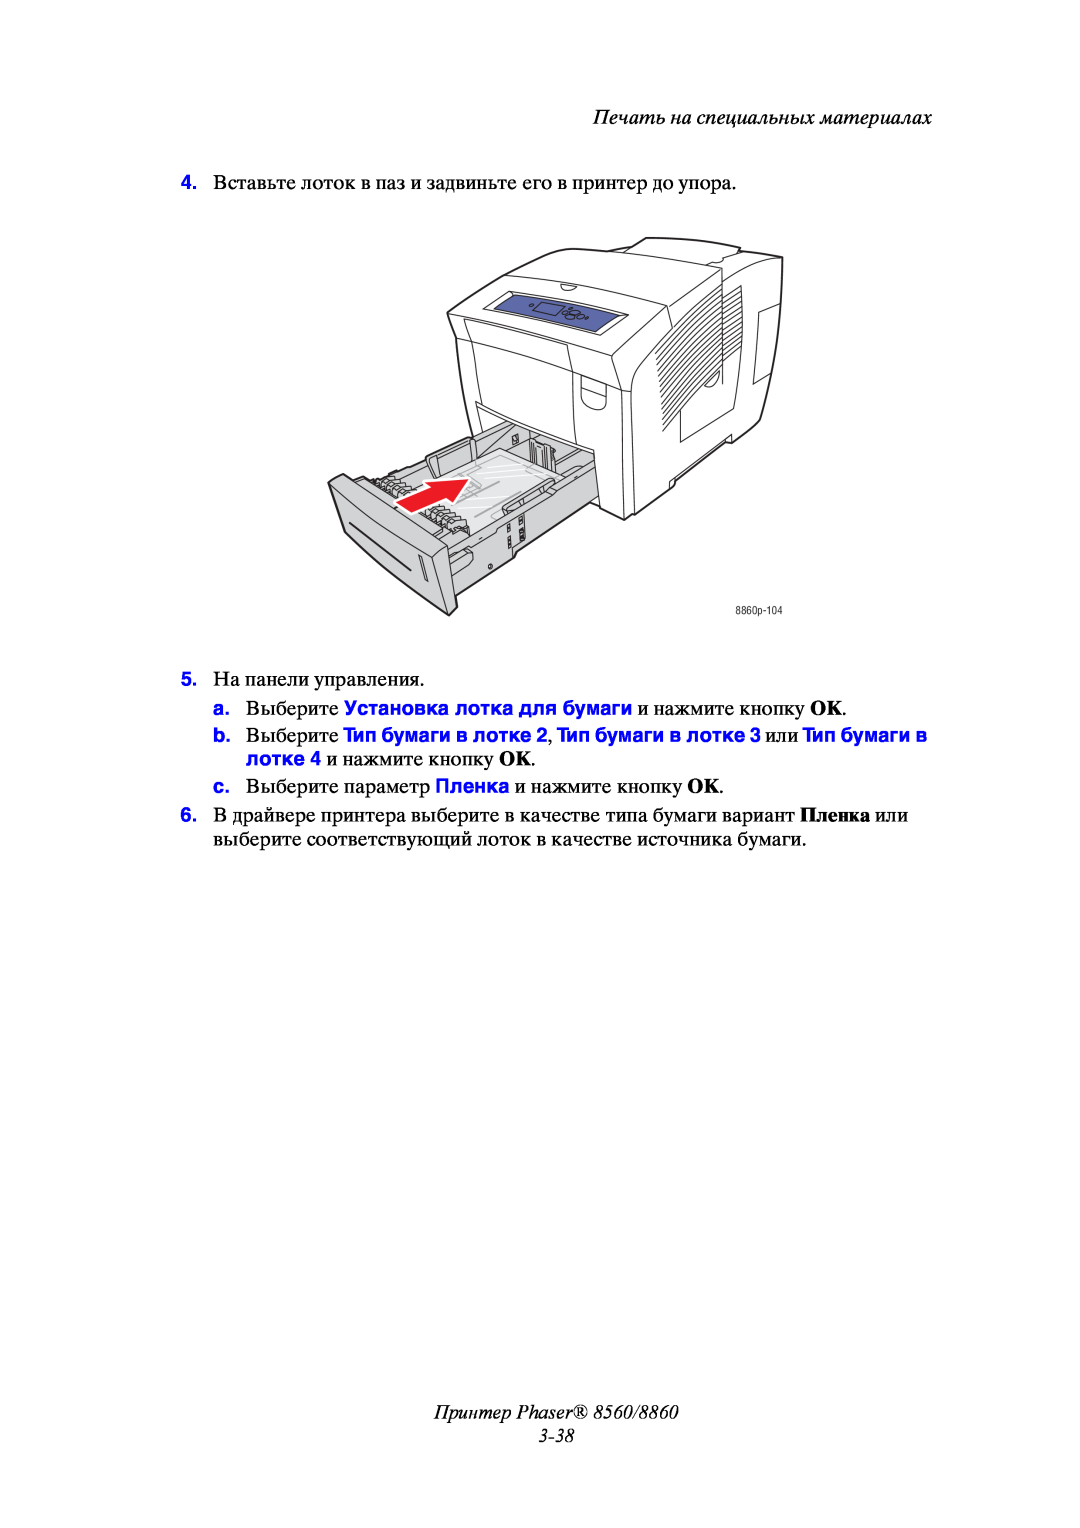 Xerox manual Принтер Phaser 8560/8860 3-38, Печать на специальных материалах, 8860p-104 